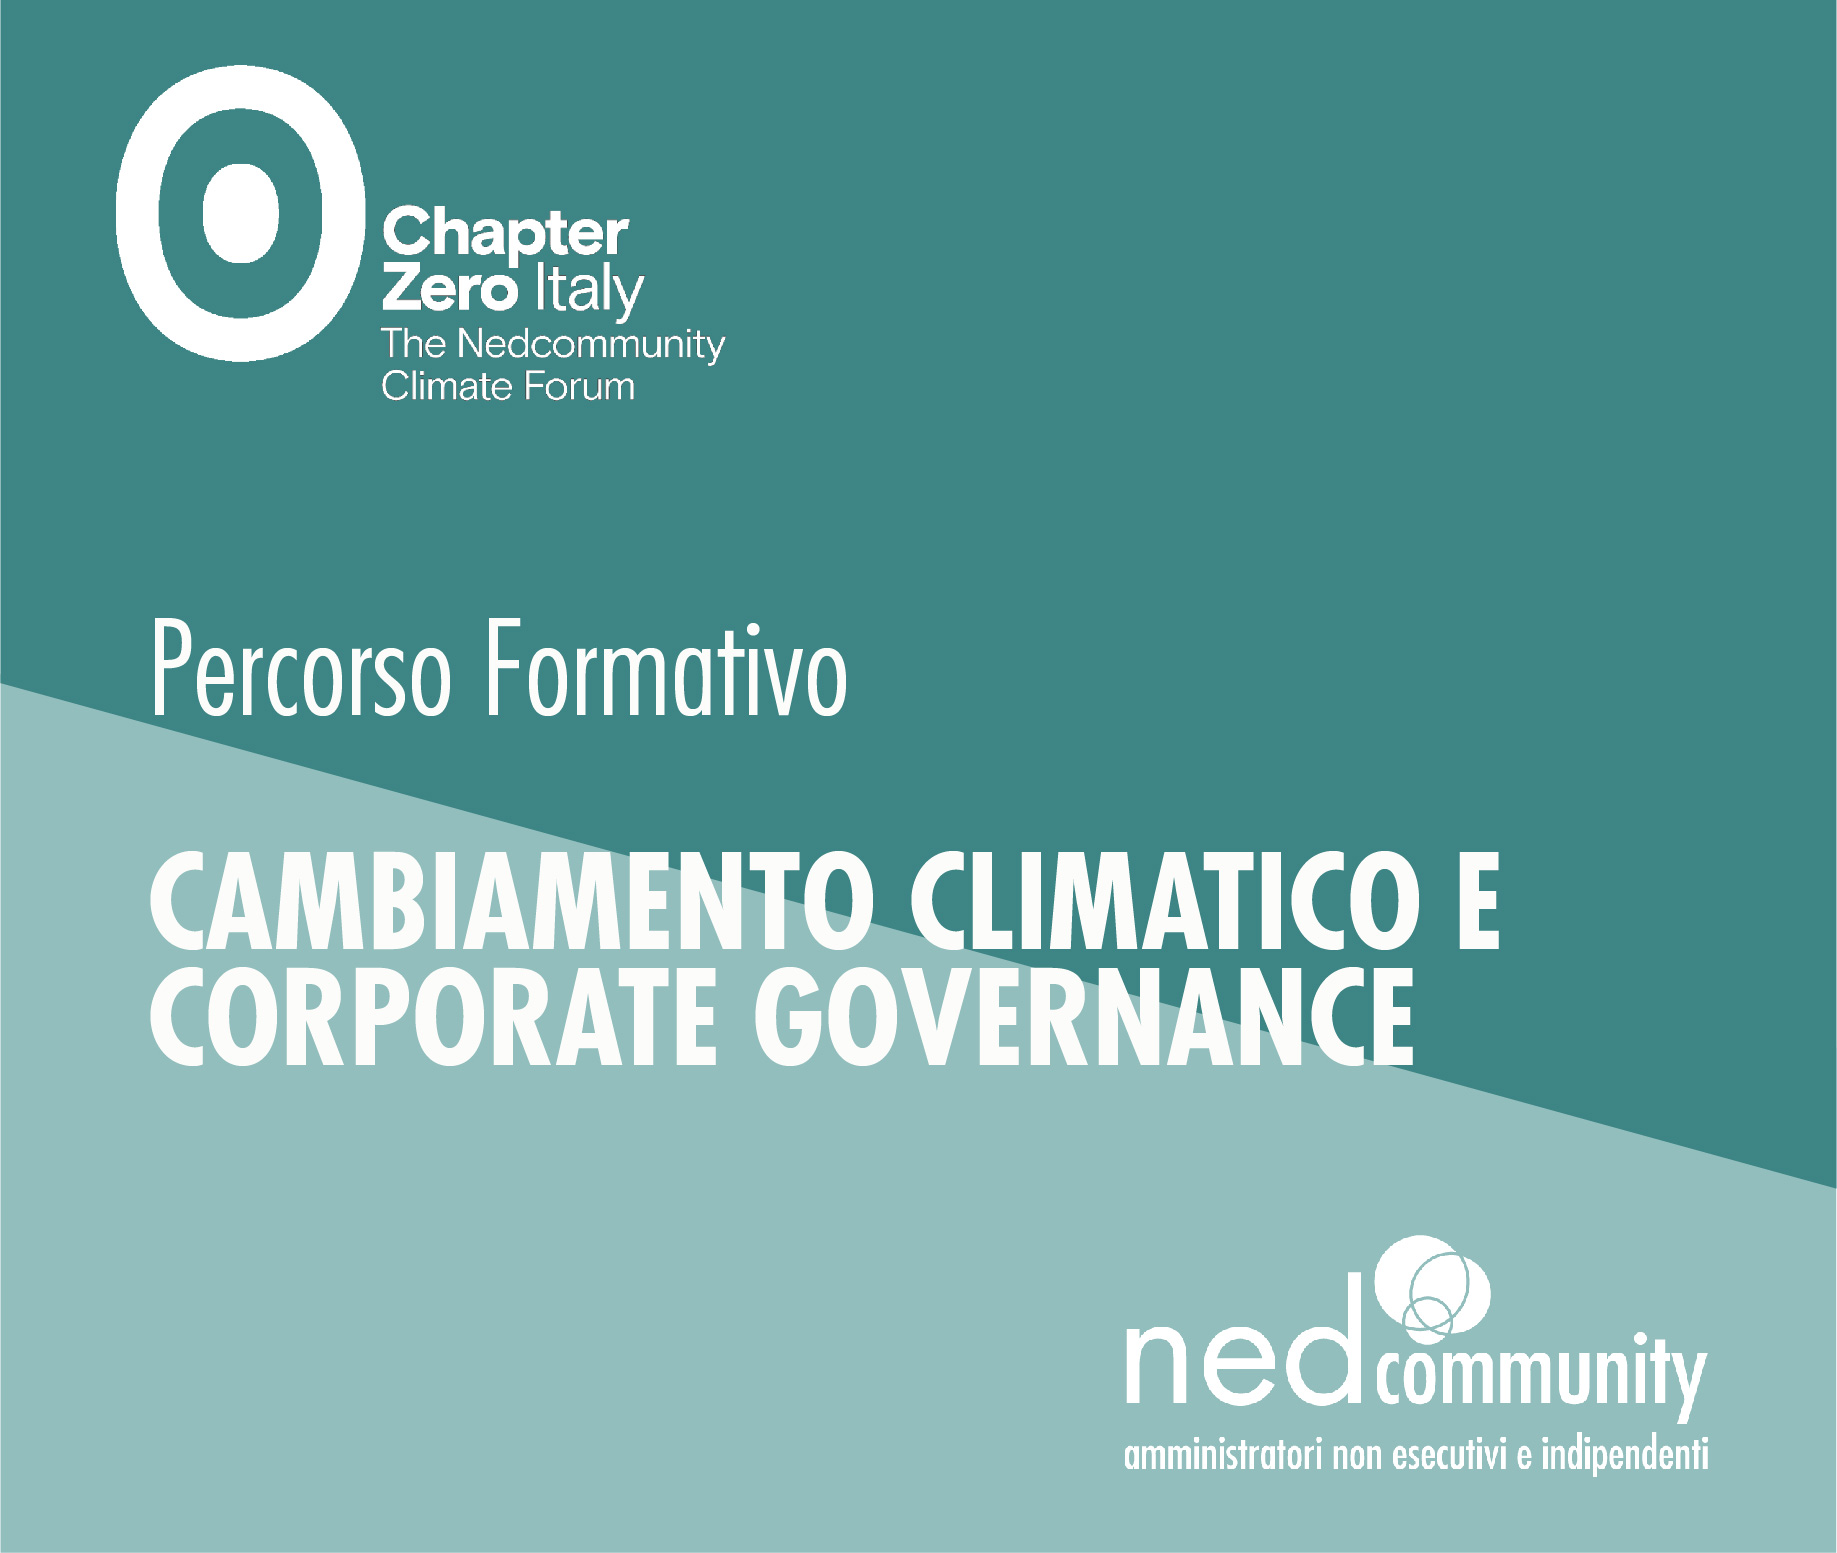 Cambiamento Climatico e Corporate Governance